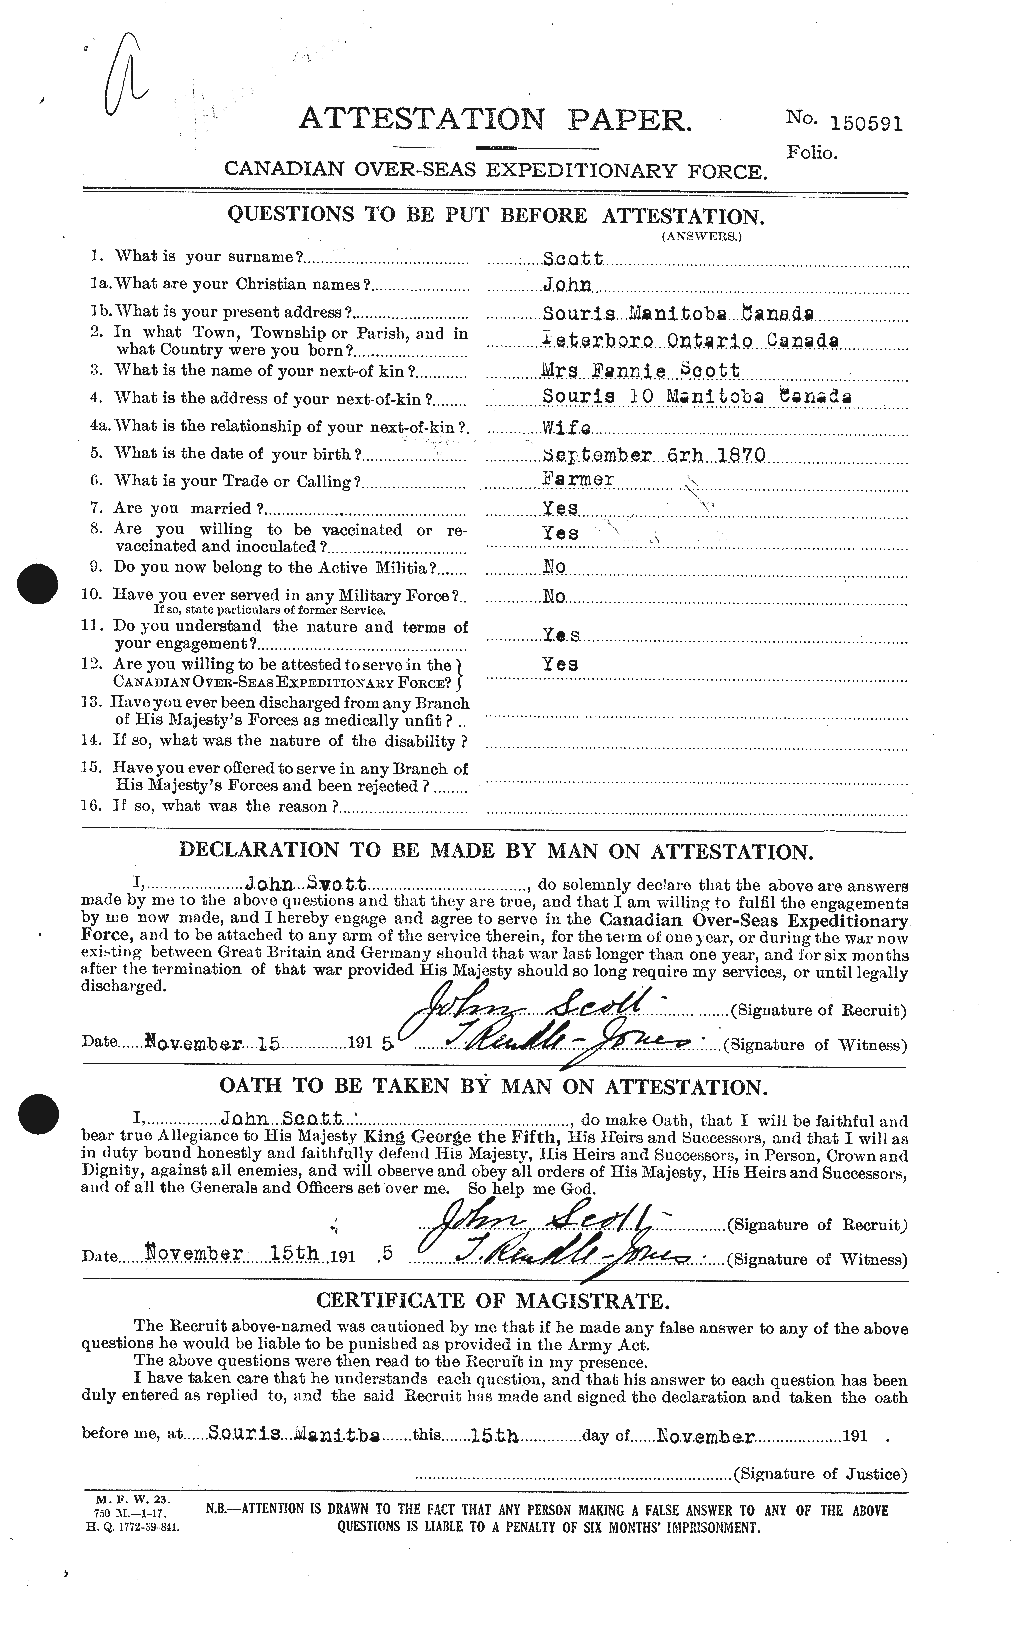 Dossiers du Personnel de la Première Guerre mondiale - CEC 084900a